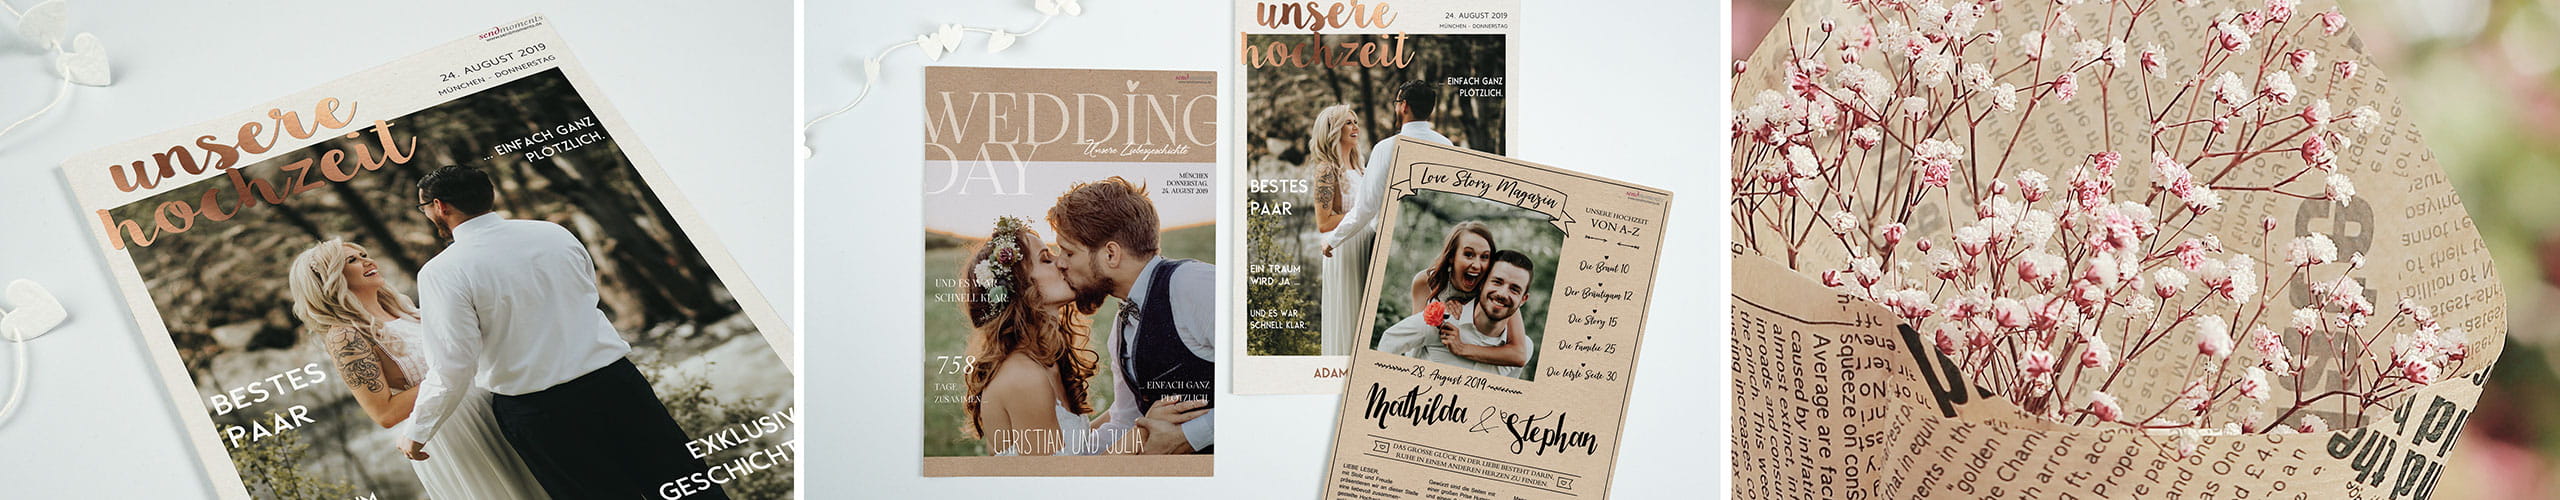 Hochzeitszeitung in verschiedenen Design-Entwürfen